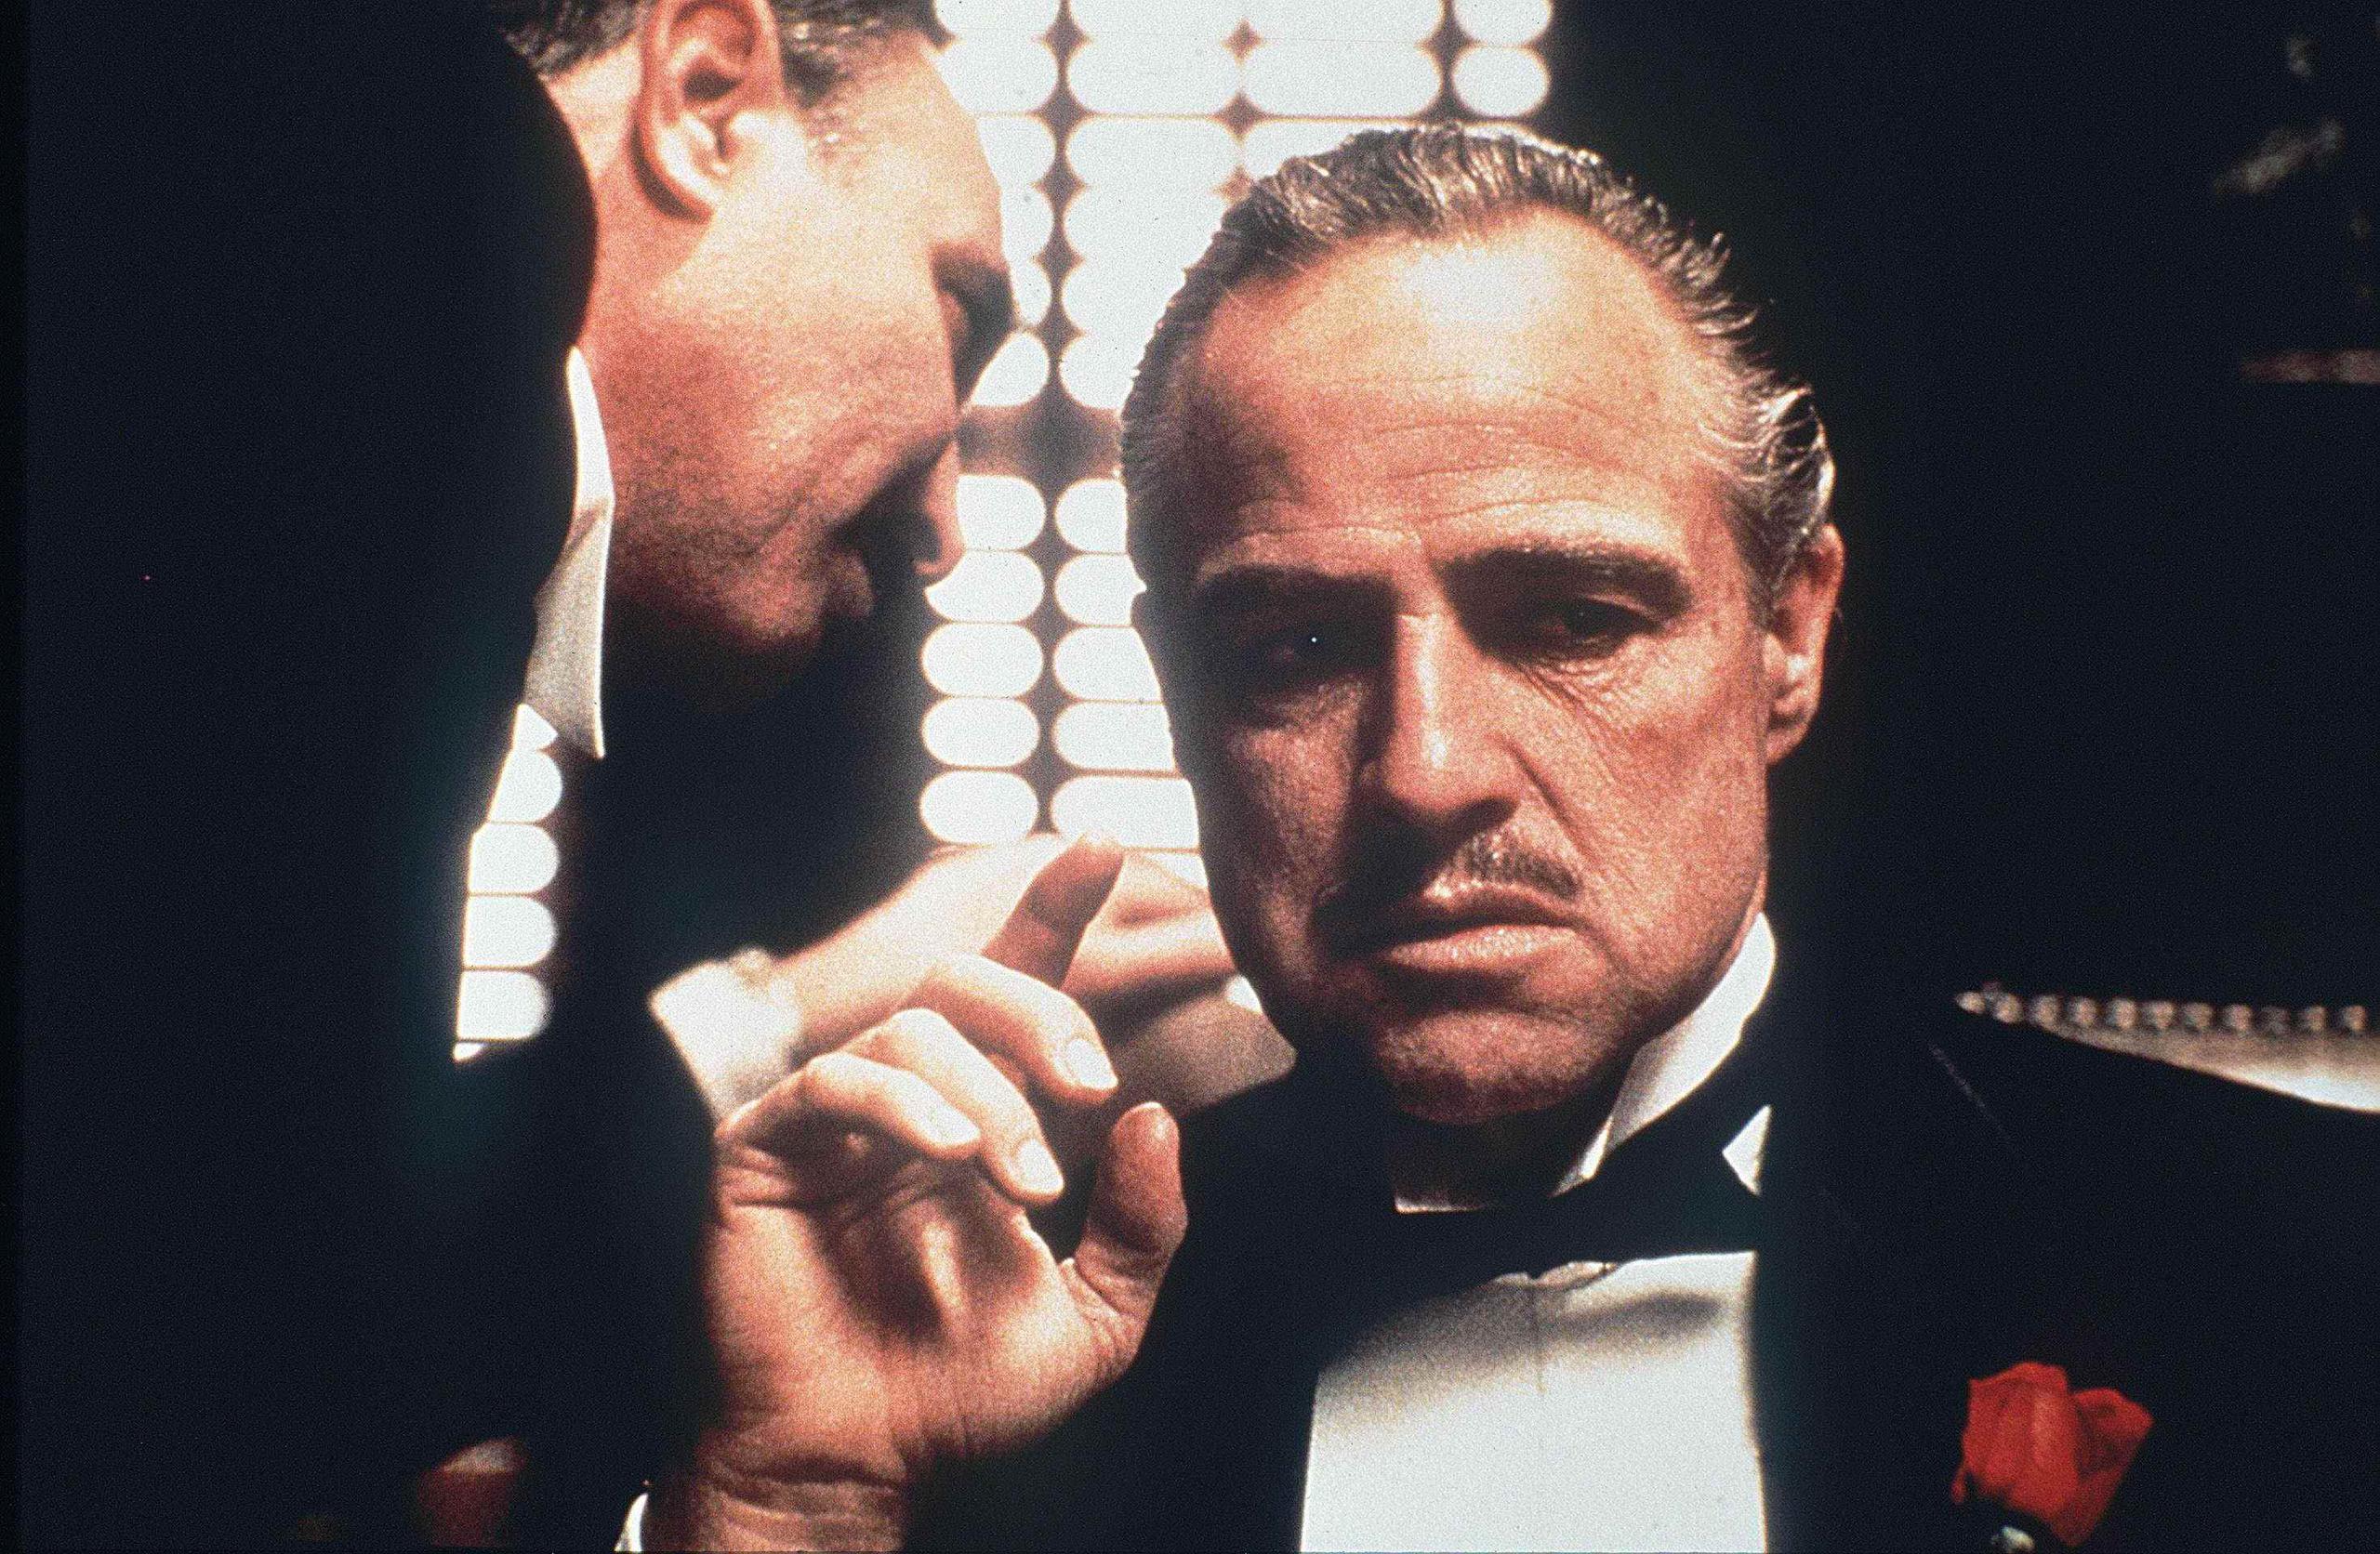 Vito Corleone, personaje interpretado por Marlon Brando, escucha la petición de Amerigo Bonasera en "The Godfather". (GFR Media/Archivo)